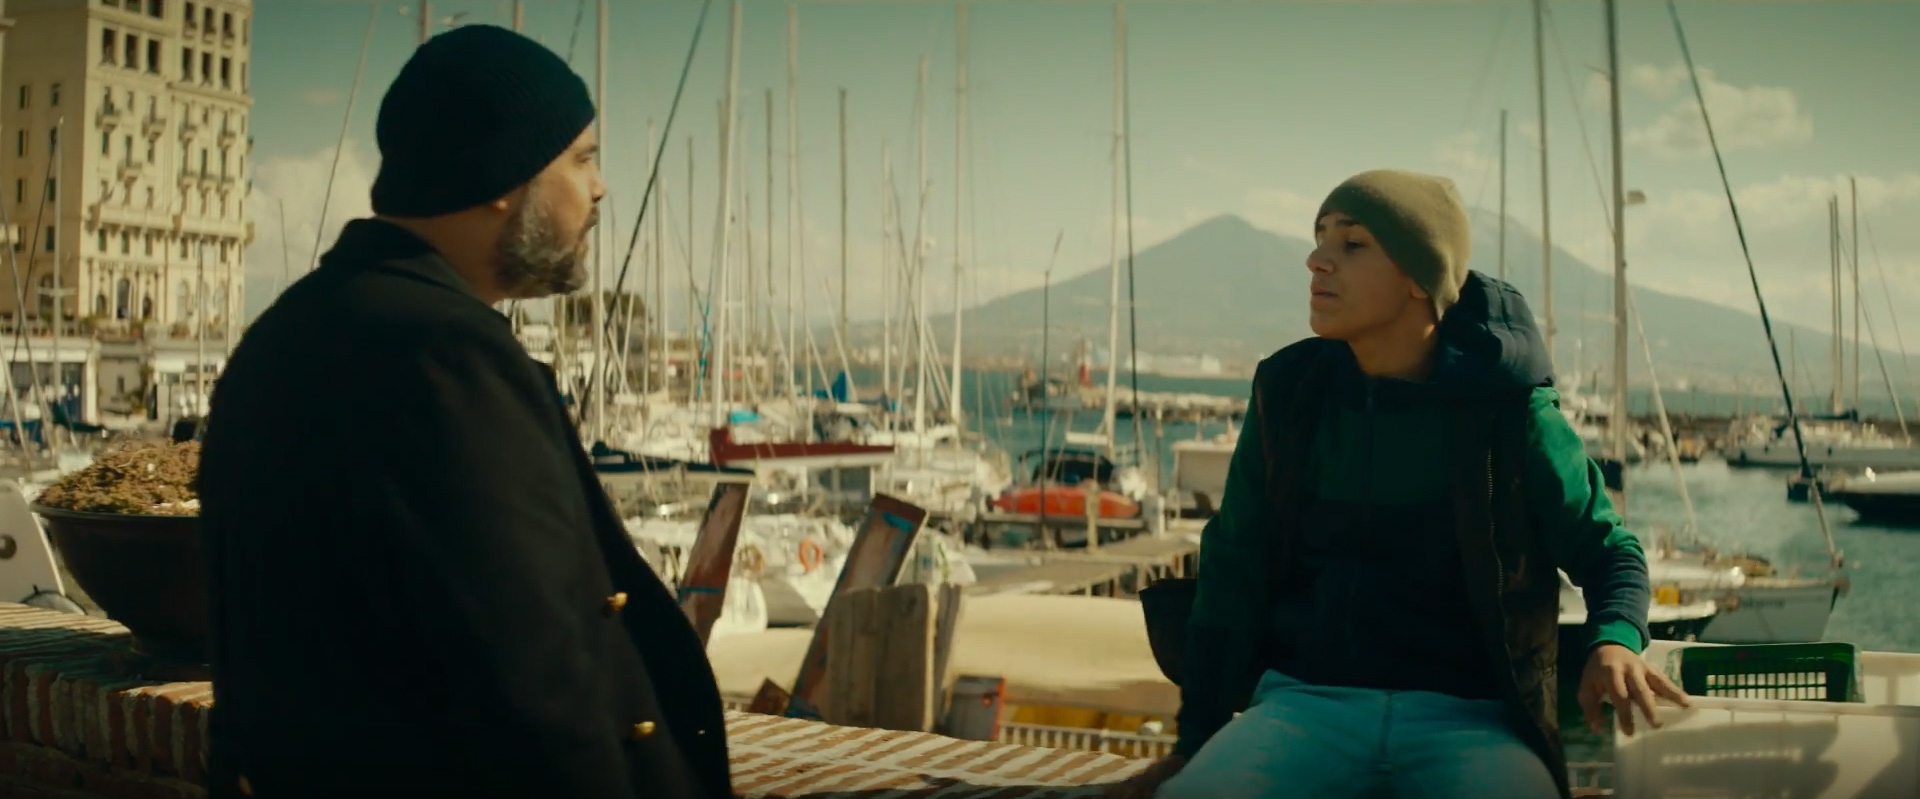 Pescatori, Clip dal film Napoli Magica di Marco D'Amore